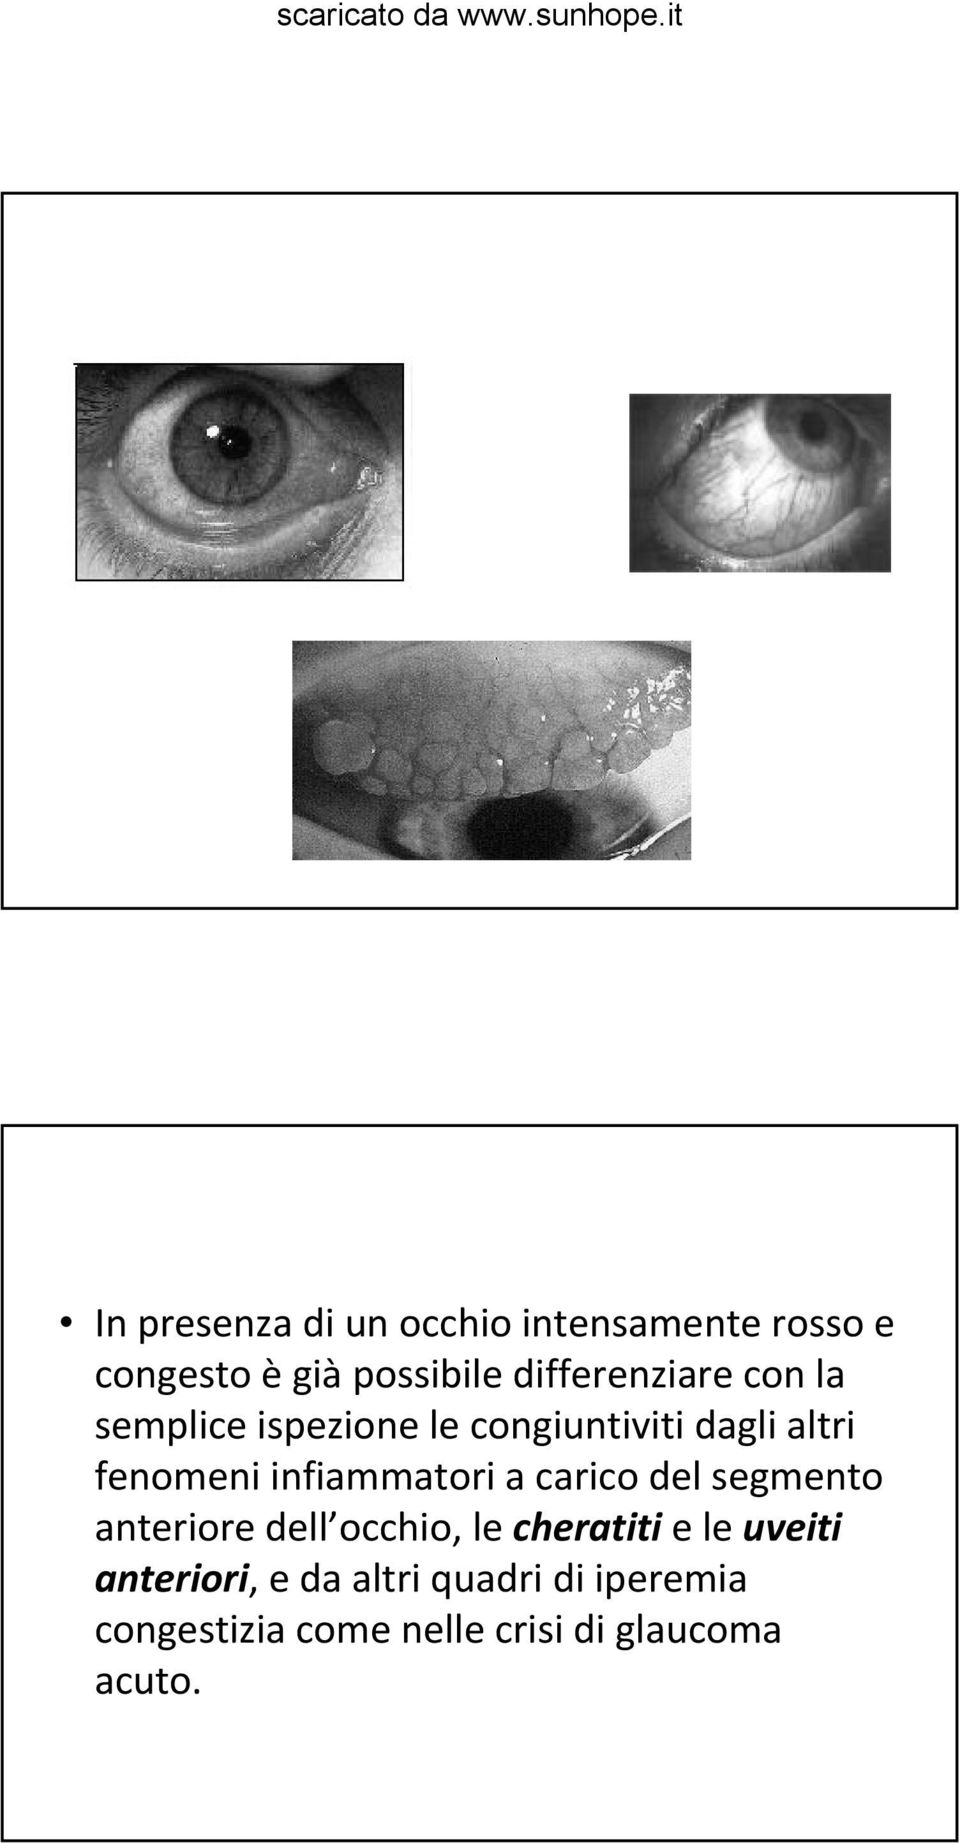 infiammatori a carico del segmento anteriore dell occhio, le cheratiti e le